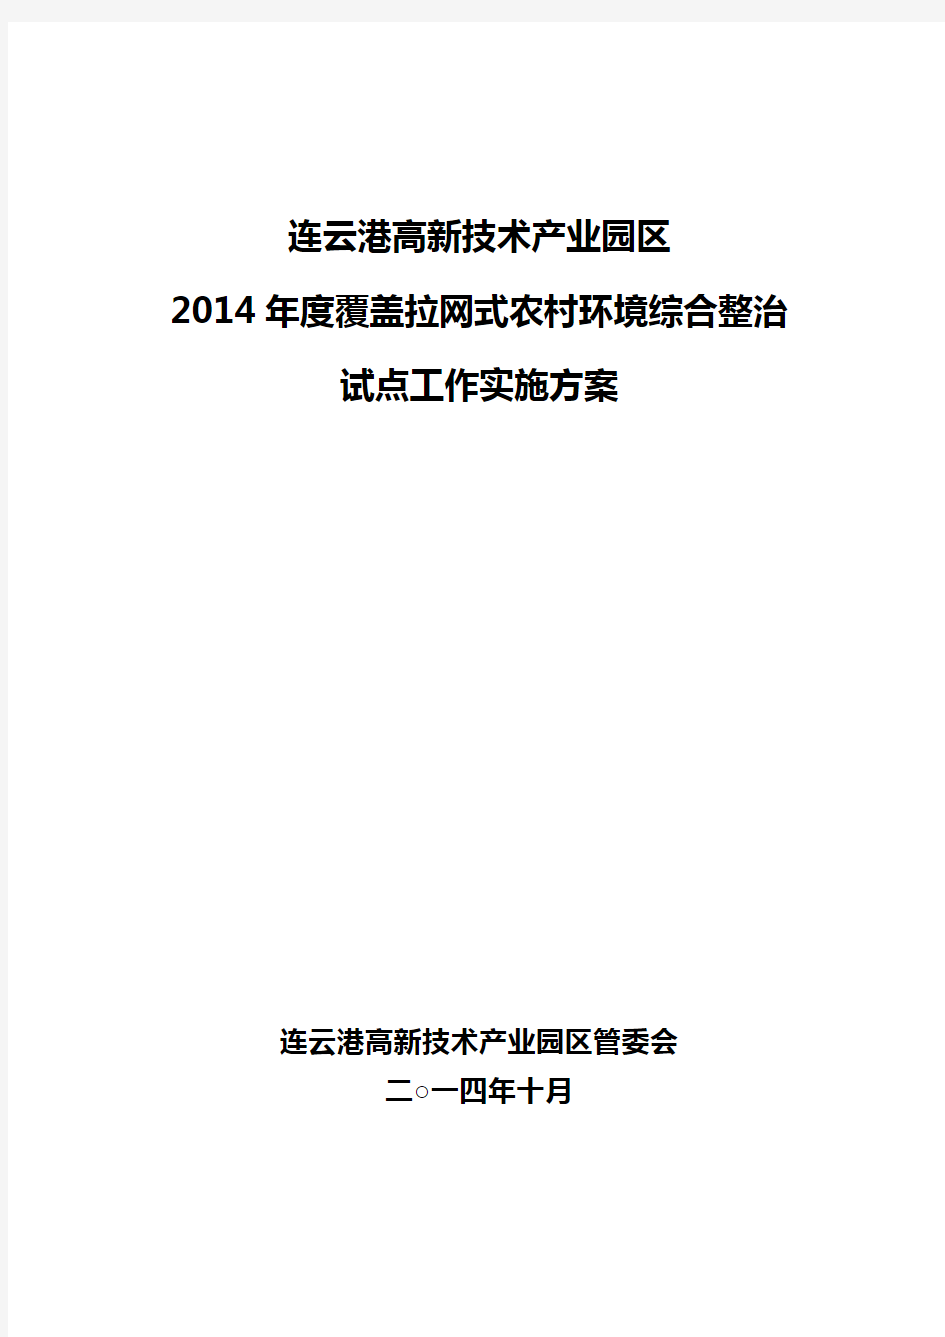 连云港高新技术产业园区2014年度覆盖拉网式农村环境综合整治试点工作实施方案(修改稿)10.28